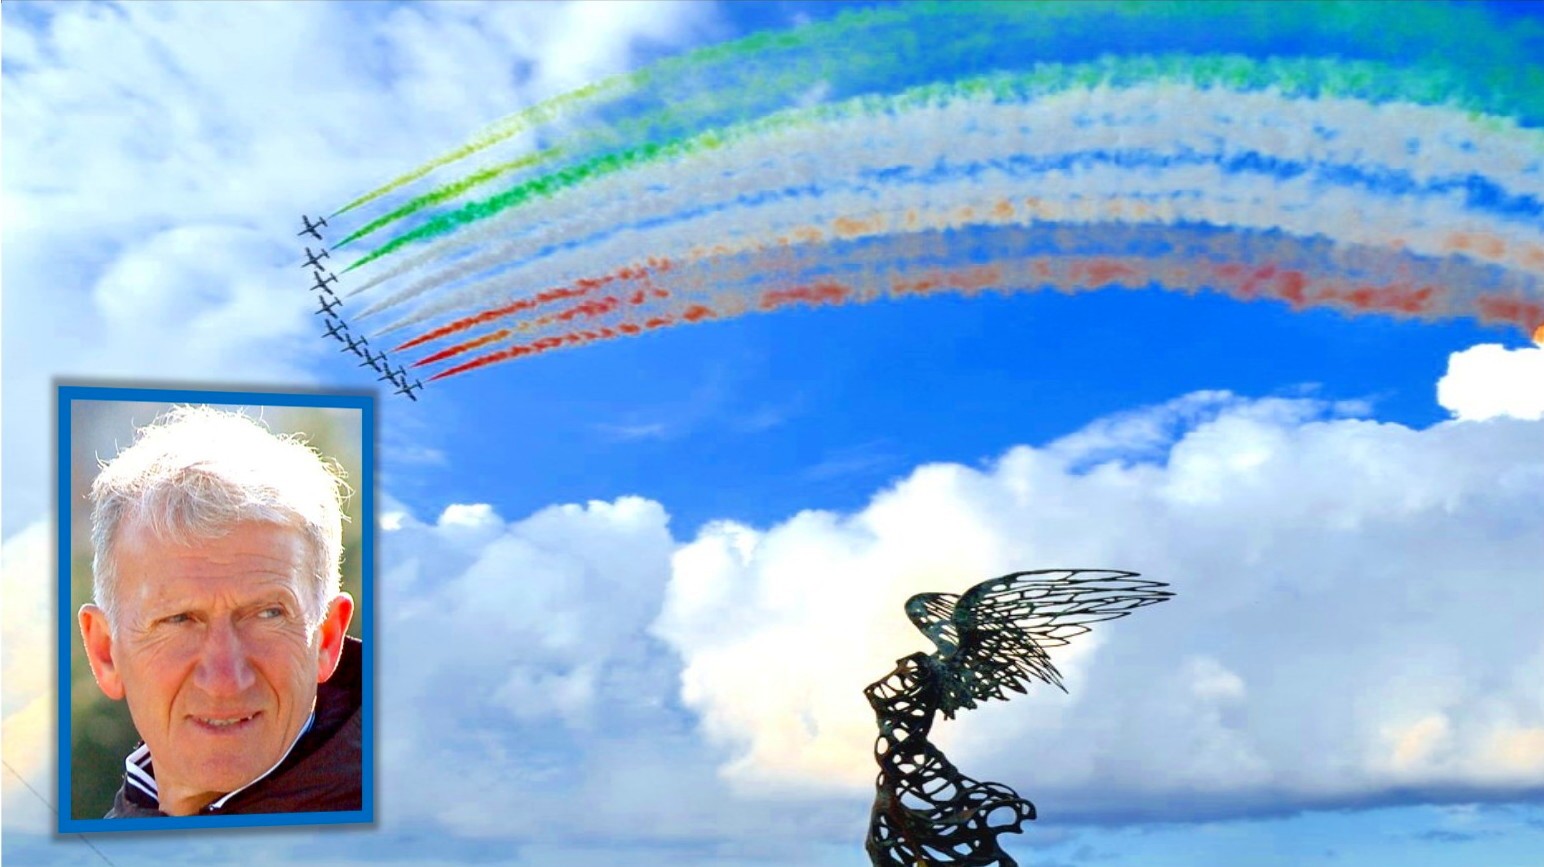 Giardini Naxos: una domenica italiana con le Frecce Tricolori dell’Aeronautica Militare